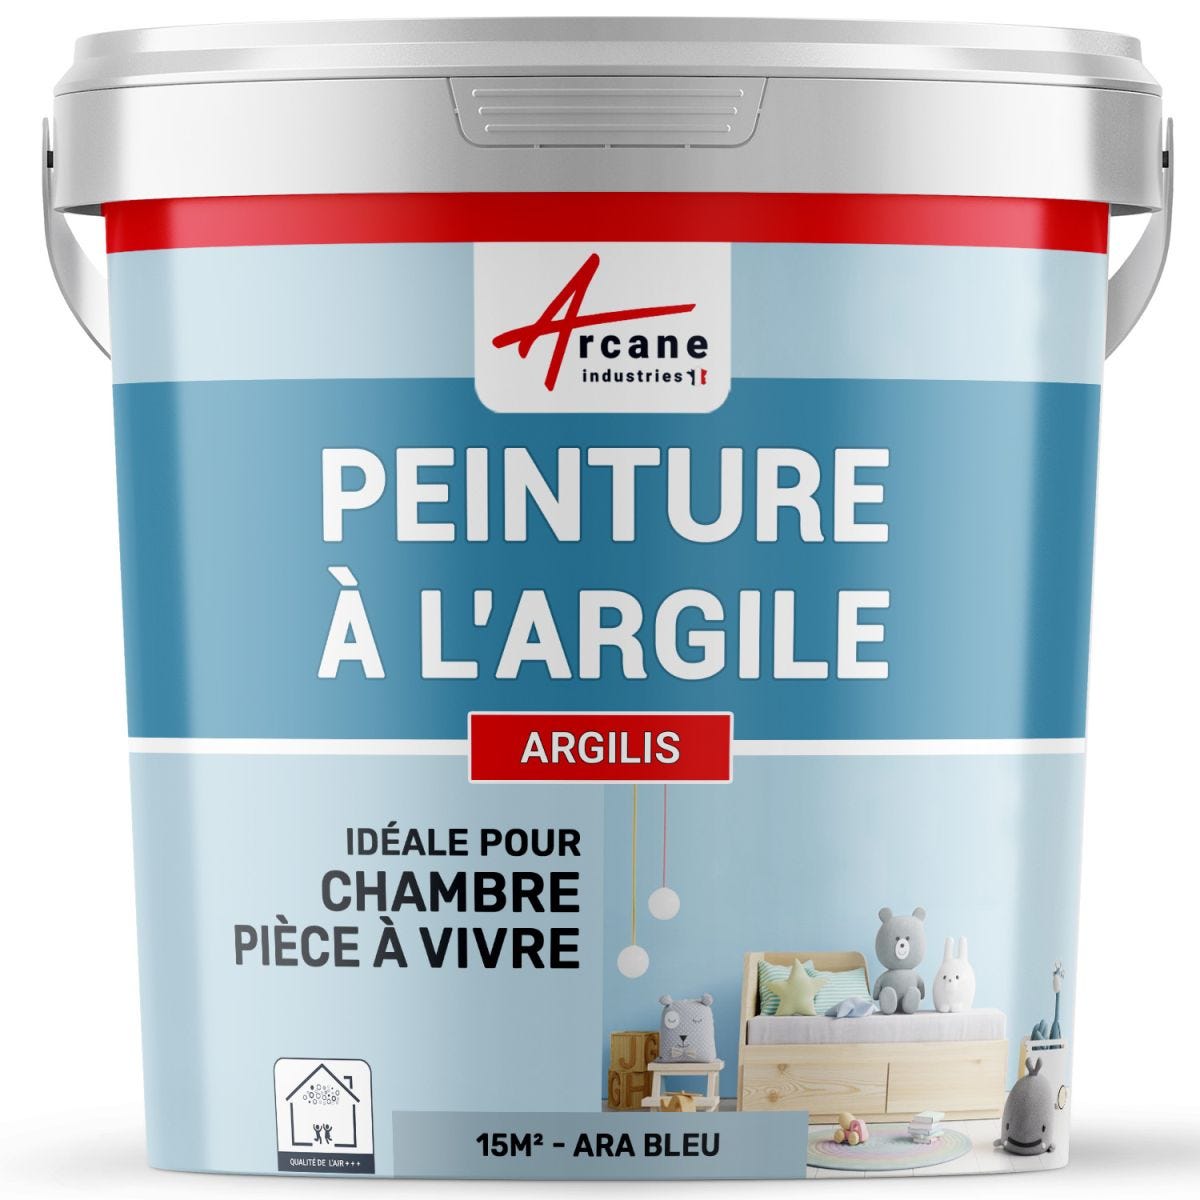 PEINTURE ARGILE naturelle et saine - ARGILIS Ara Bleu - 15 m² (2.5 kg en 1 couche)ARCANE INDUSTRIES 7